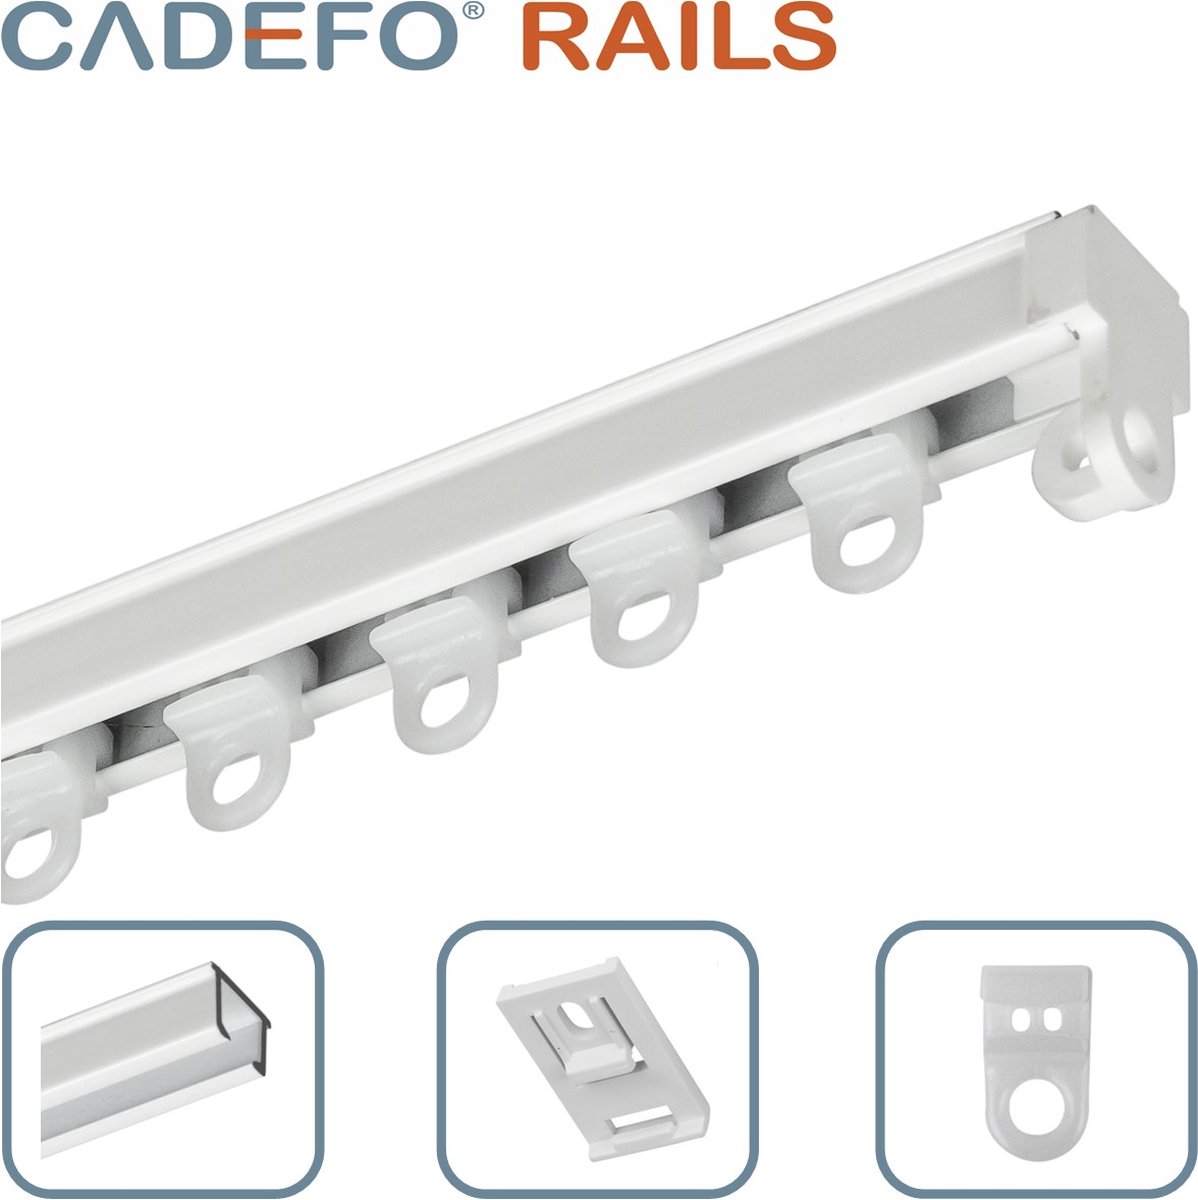 CADEFO RAILS (201 - 250 cm) Gordijnrails - Compleet op maat! - UIT 1 STUK - Leverbaar tot 6 meter - Plafondbevestiging - Lengte 231 cm